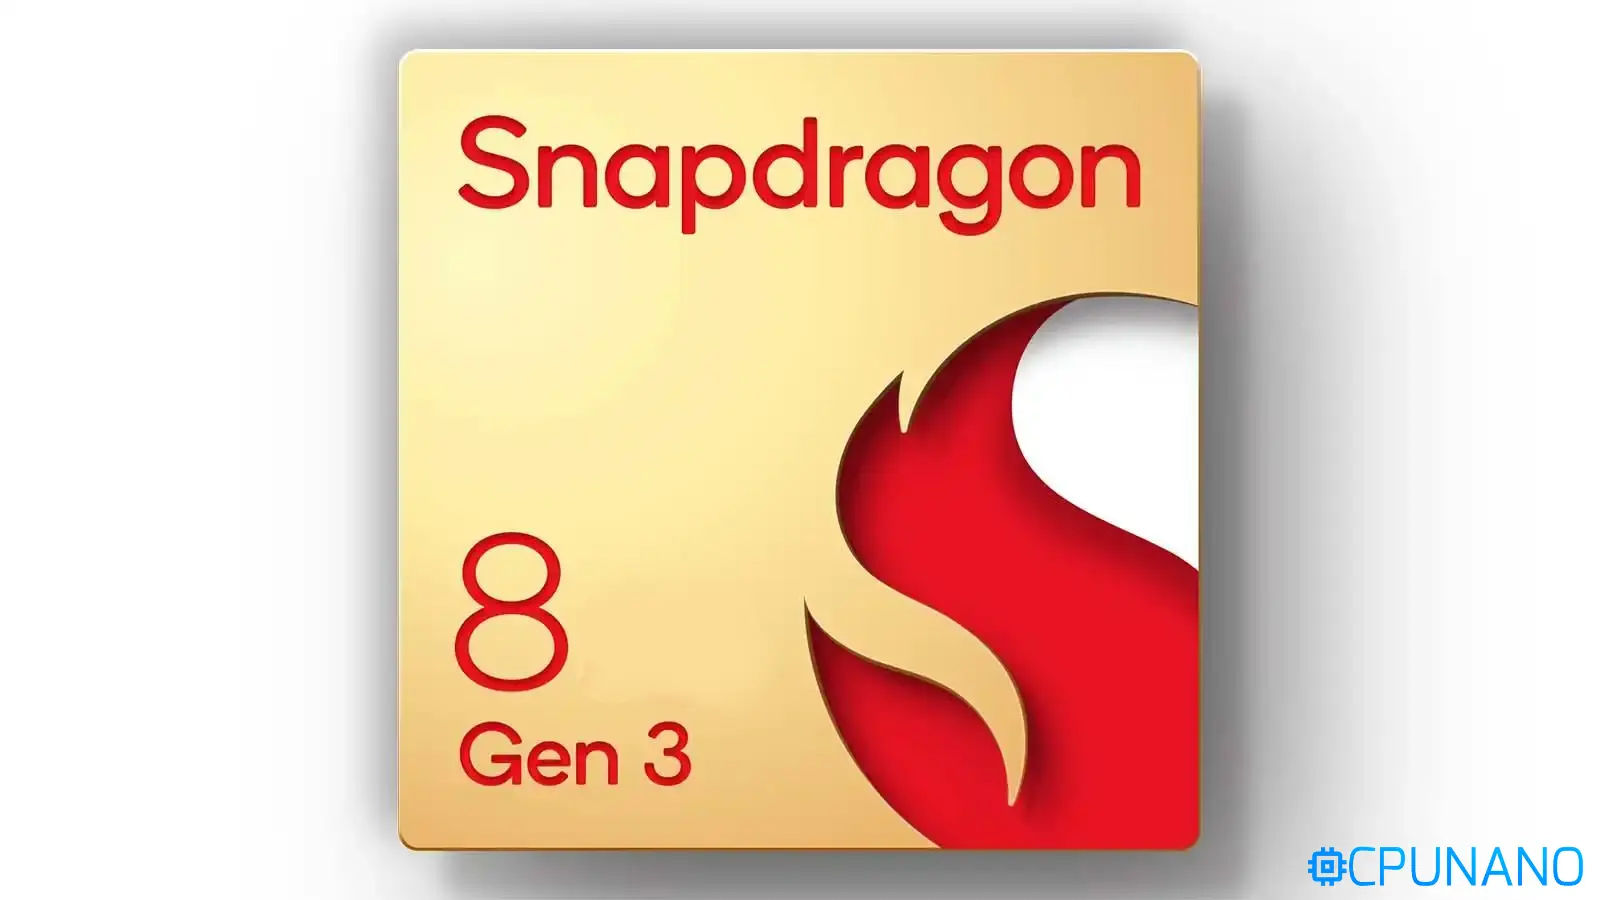 سناب دراجون 8 جين 3 – Snapdragon 8 Gen 3: من الممكن أن يأتي المعالج في وقت أقرب من الجدول المعتاد